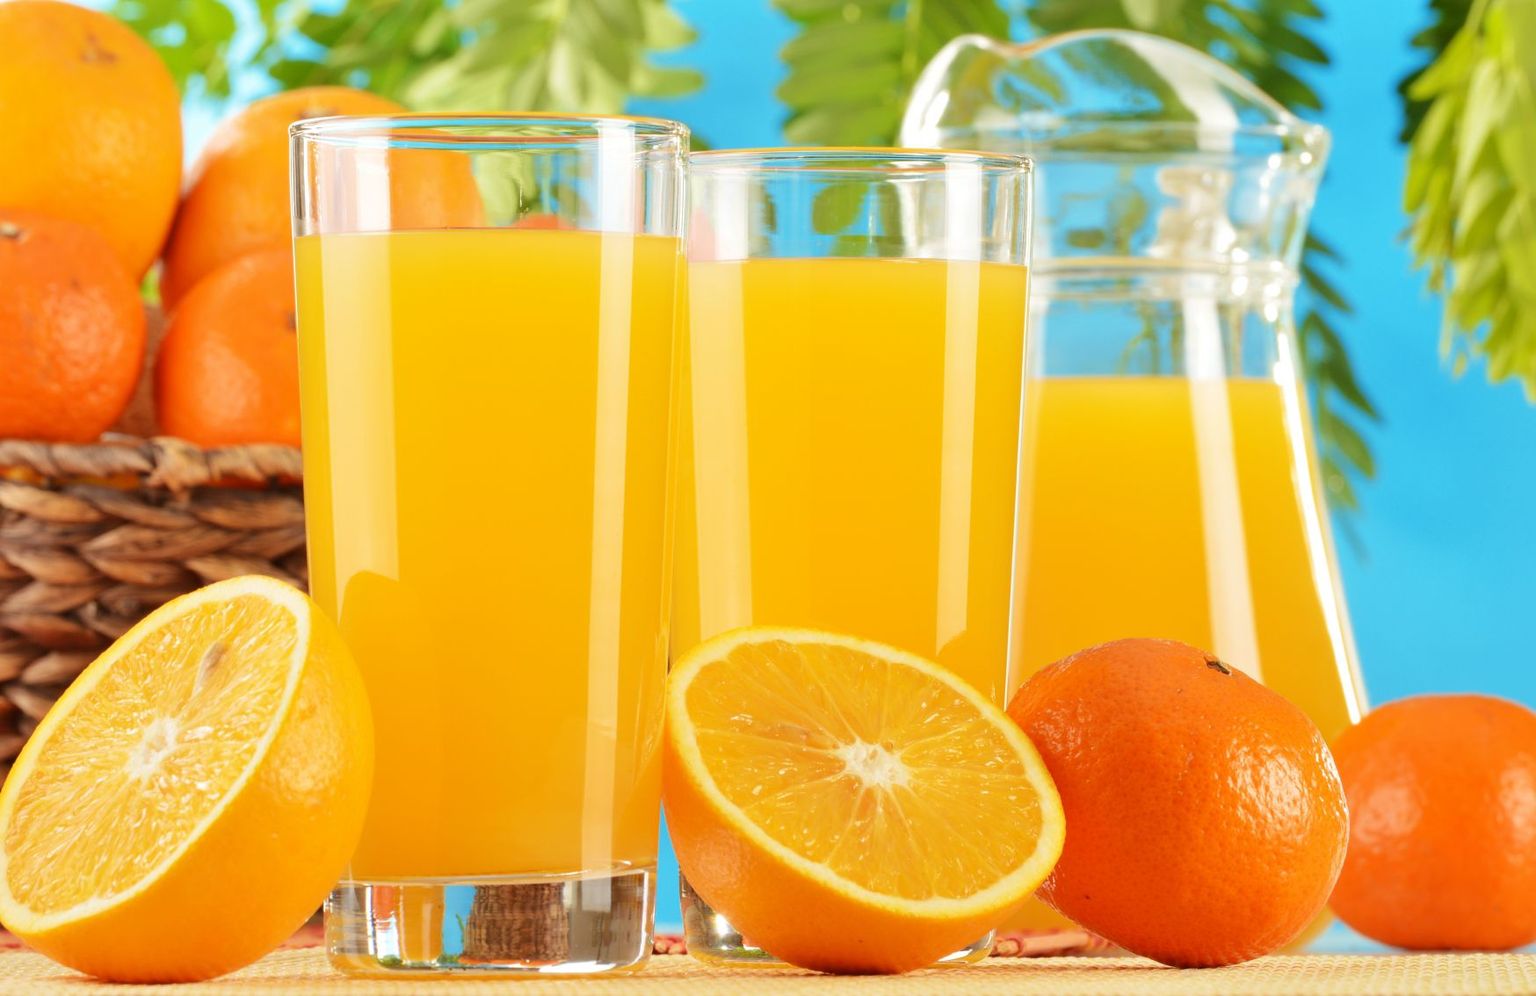 Eesti elanikud eelistavad enim juua apelsinimahla.